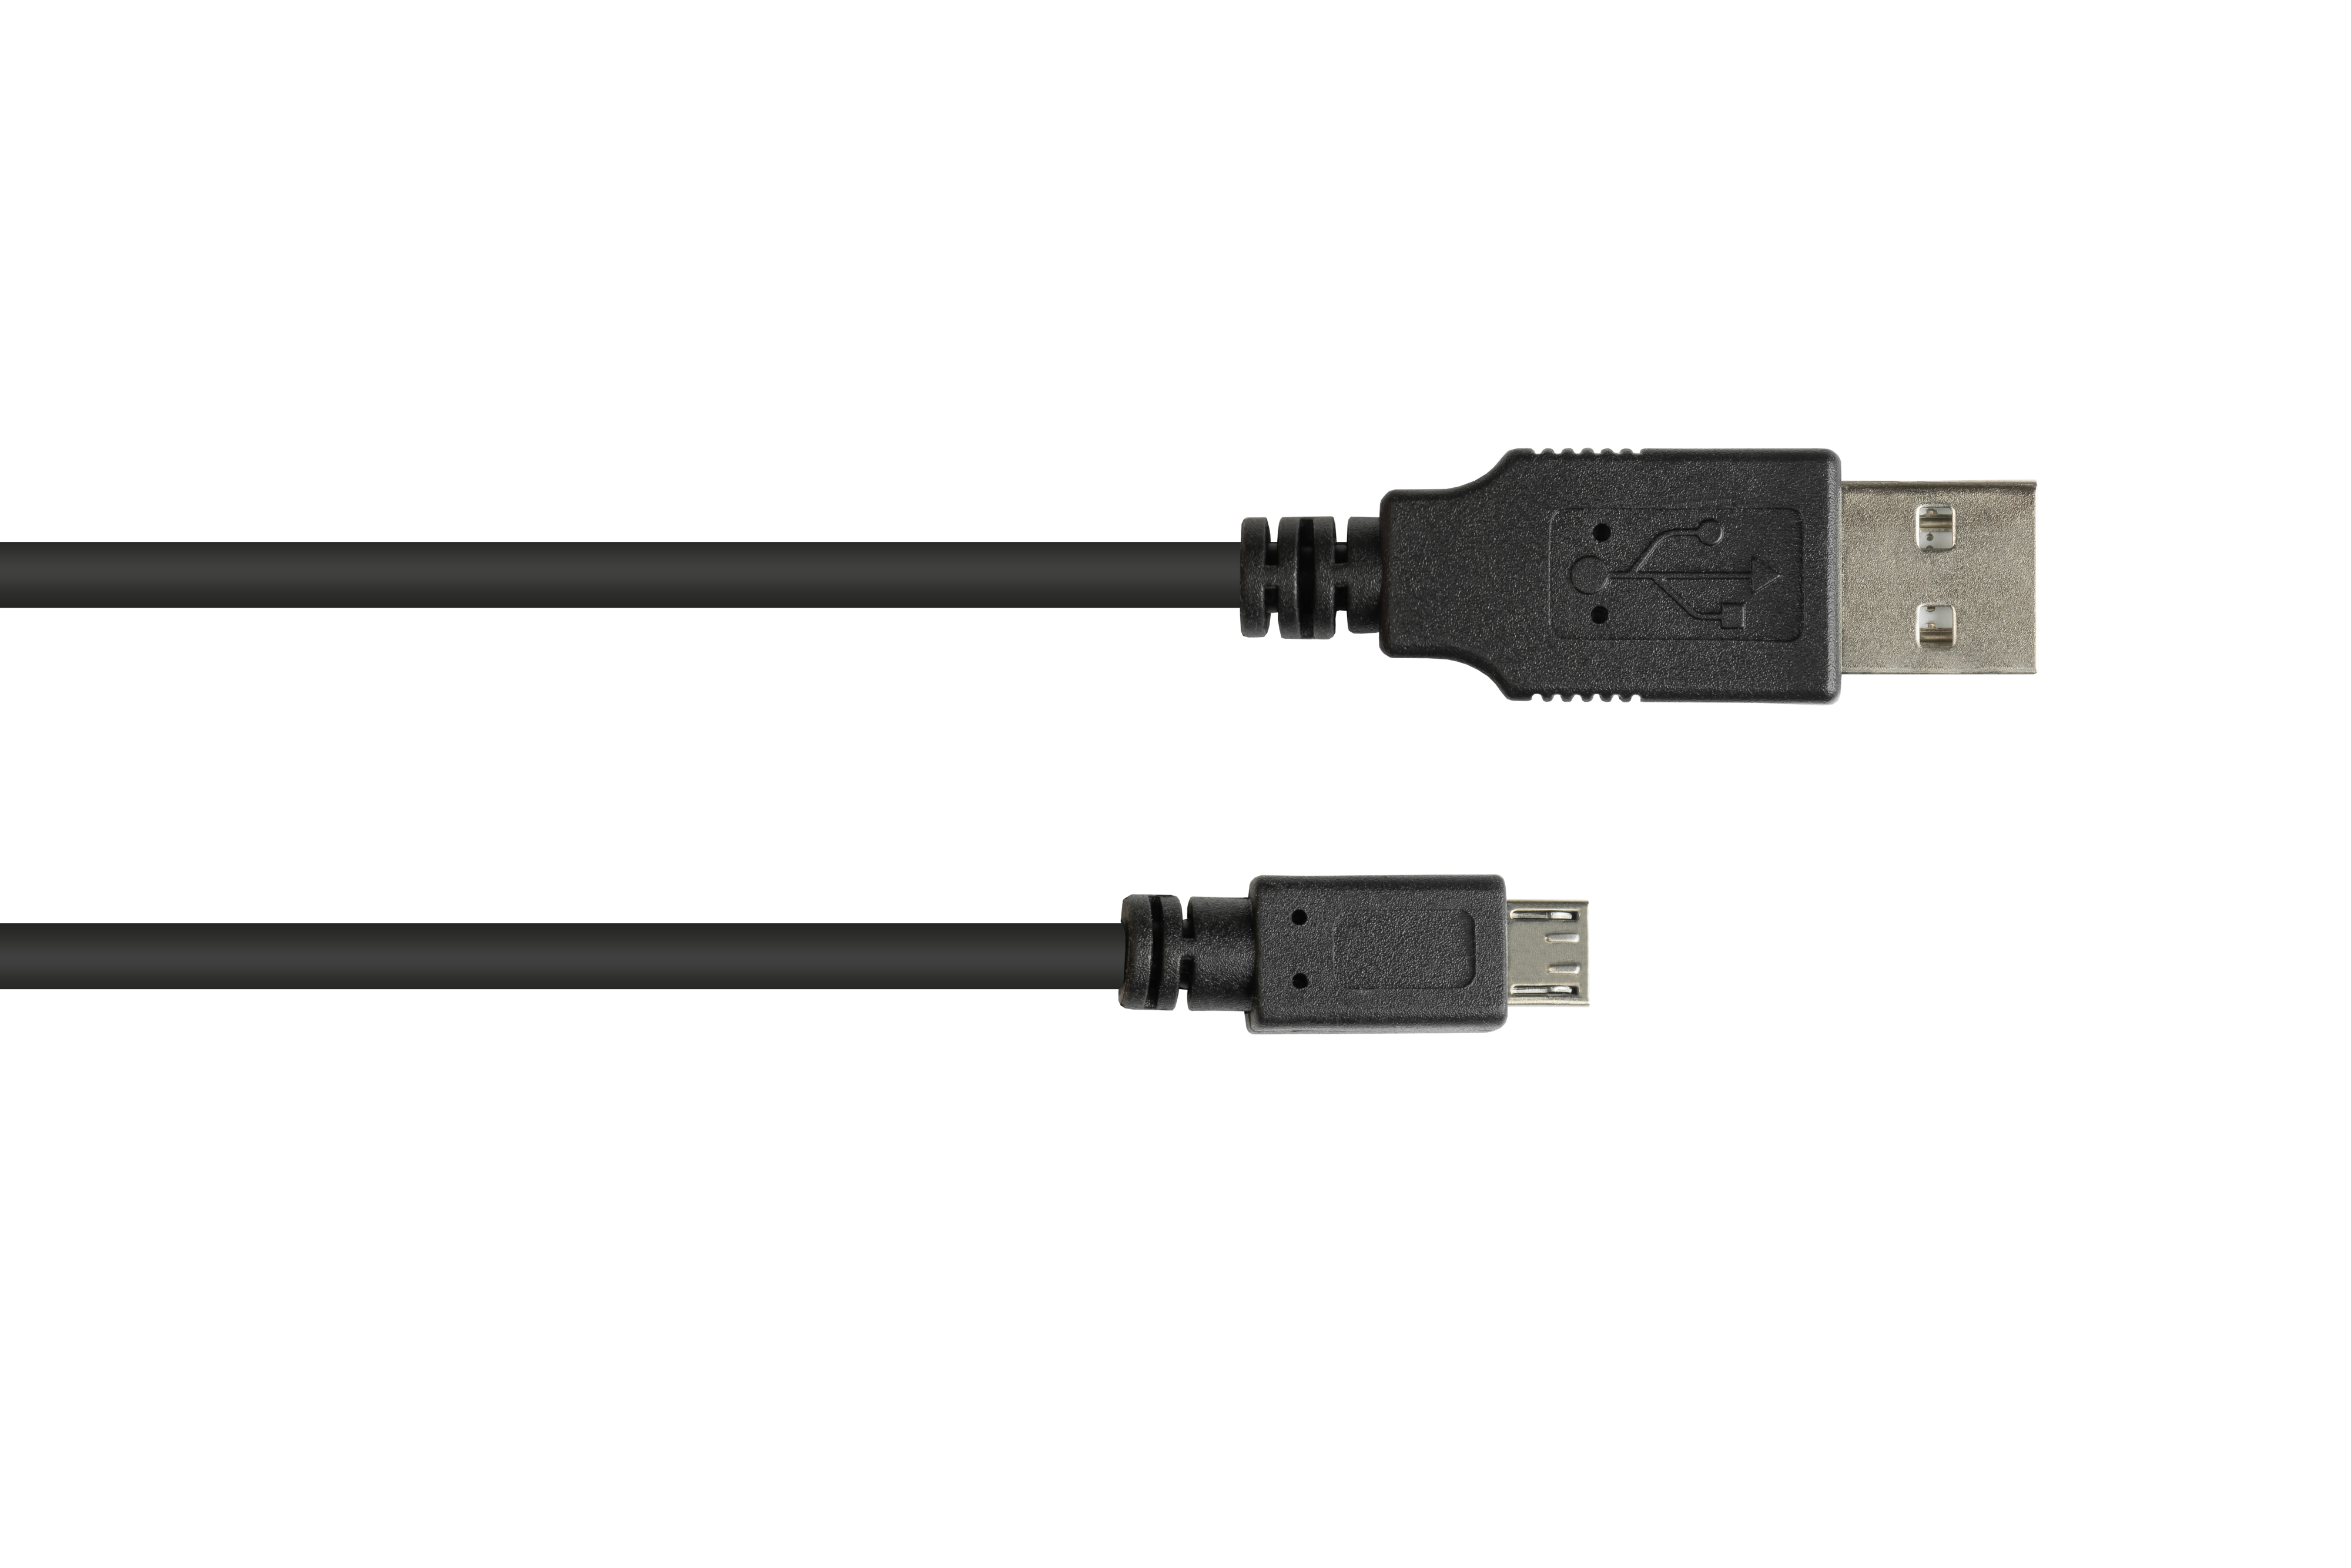 Stecker B, Micro USB Anschlusskabel GOOD Stecker schwarz CONNECTIONS 2.0 A an